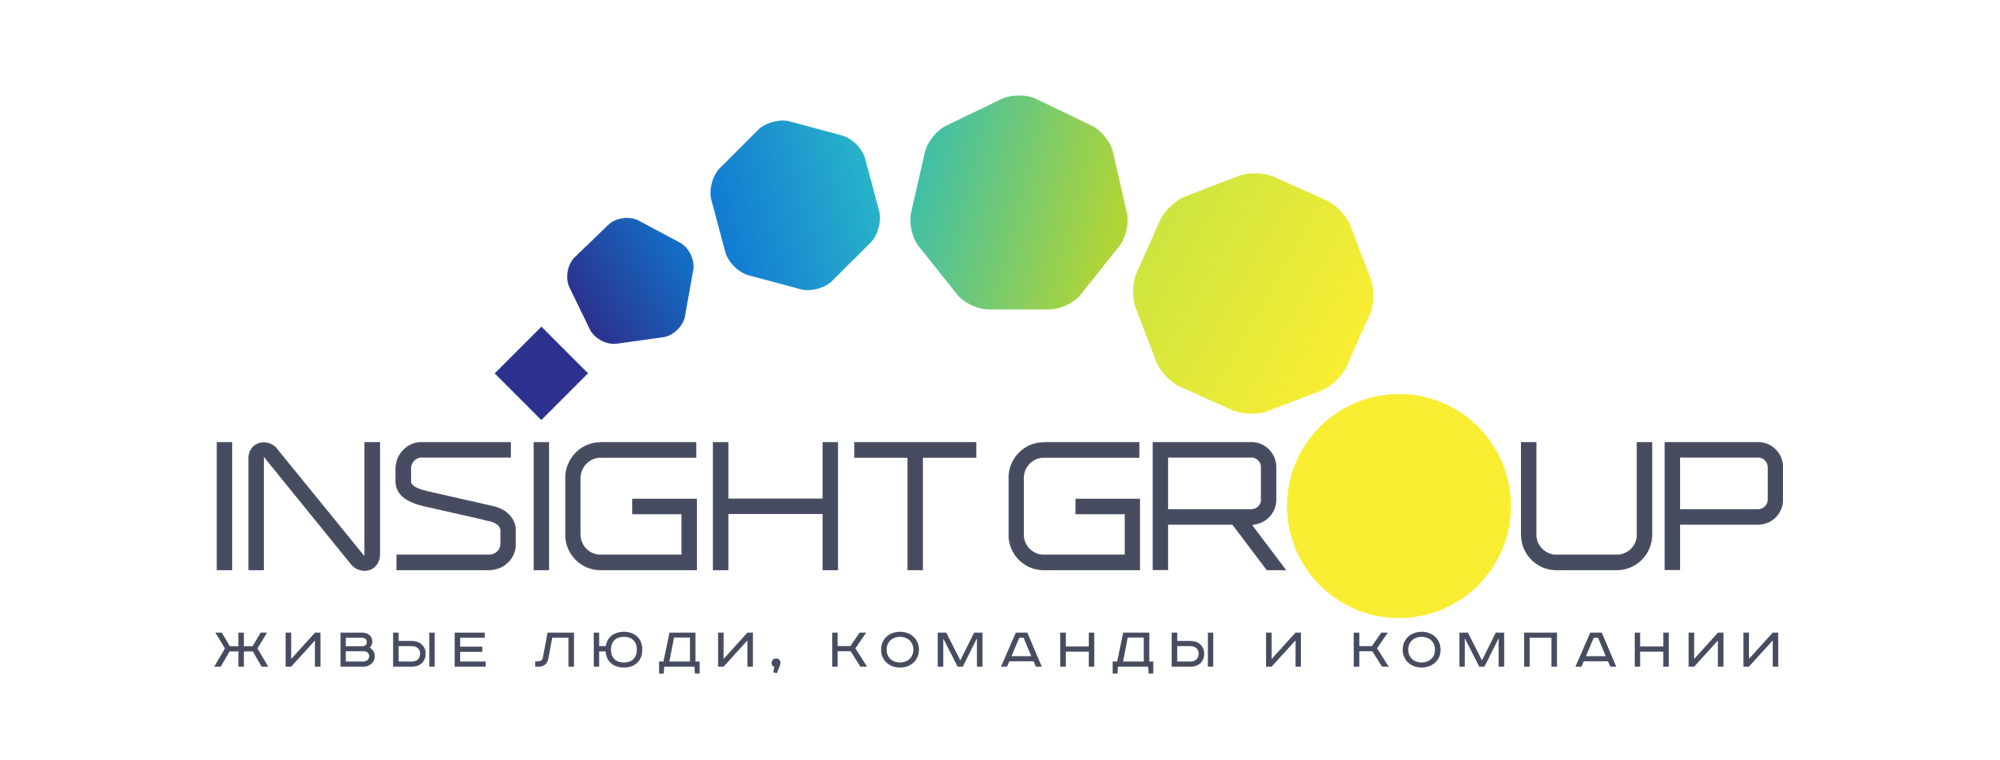 Компания инсайт. Инсайт группа компаний. Insight группа. Инвестиционная группа Insight logo. Инвест группа Инсайт логотип.